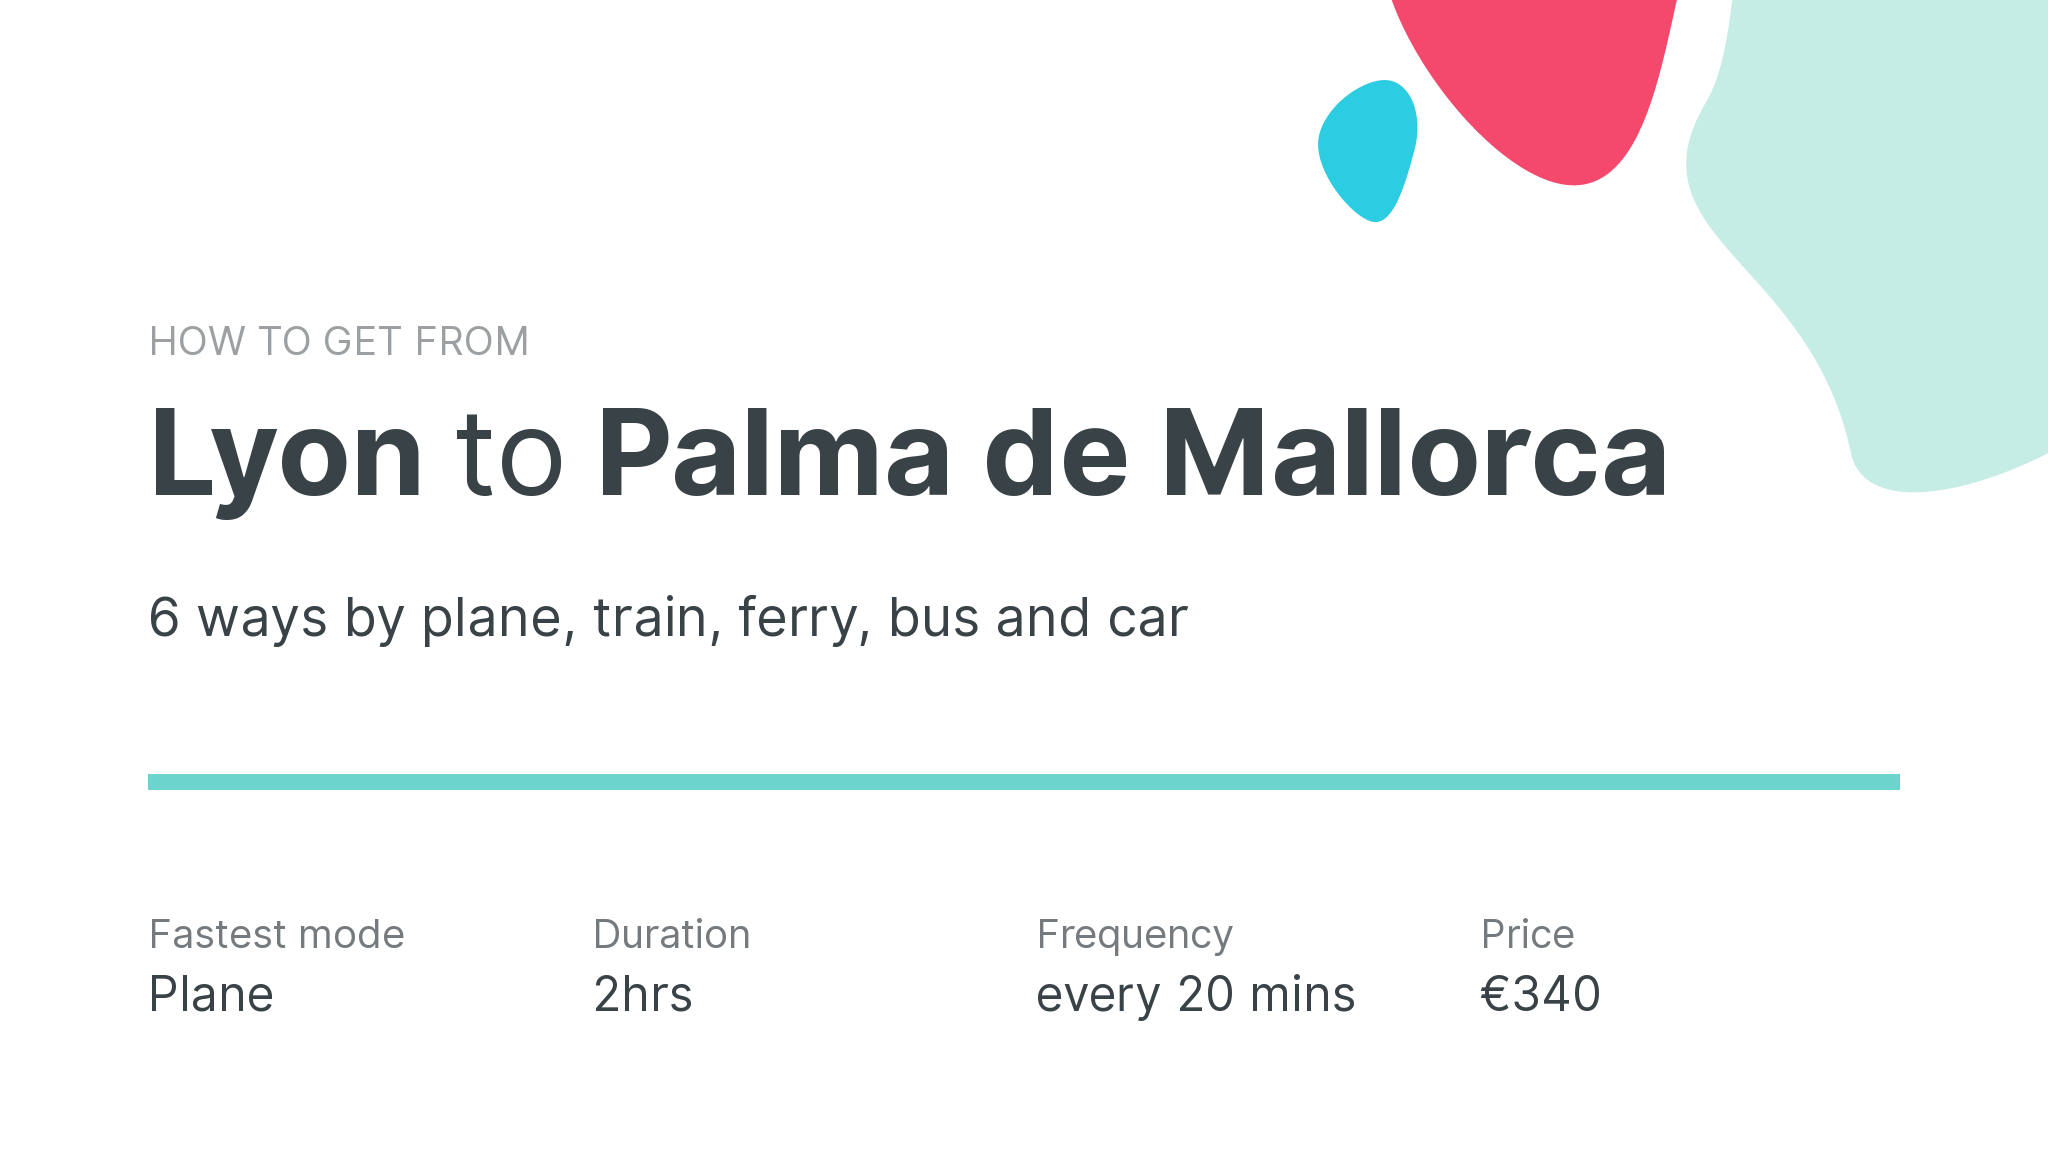 How do I get from Lyon to Palma de Mallorca